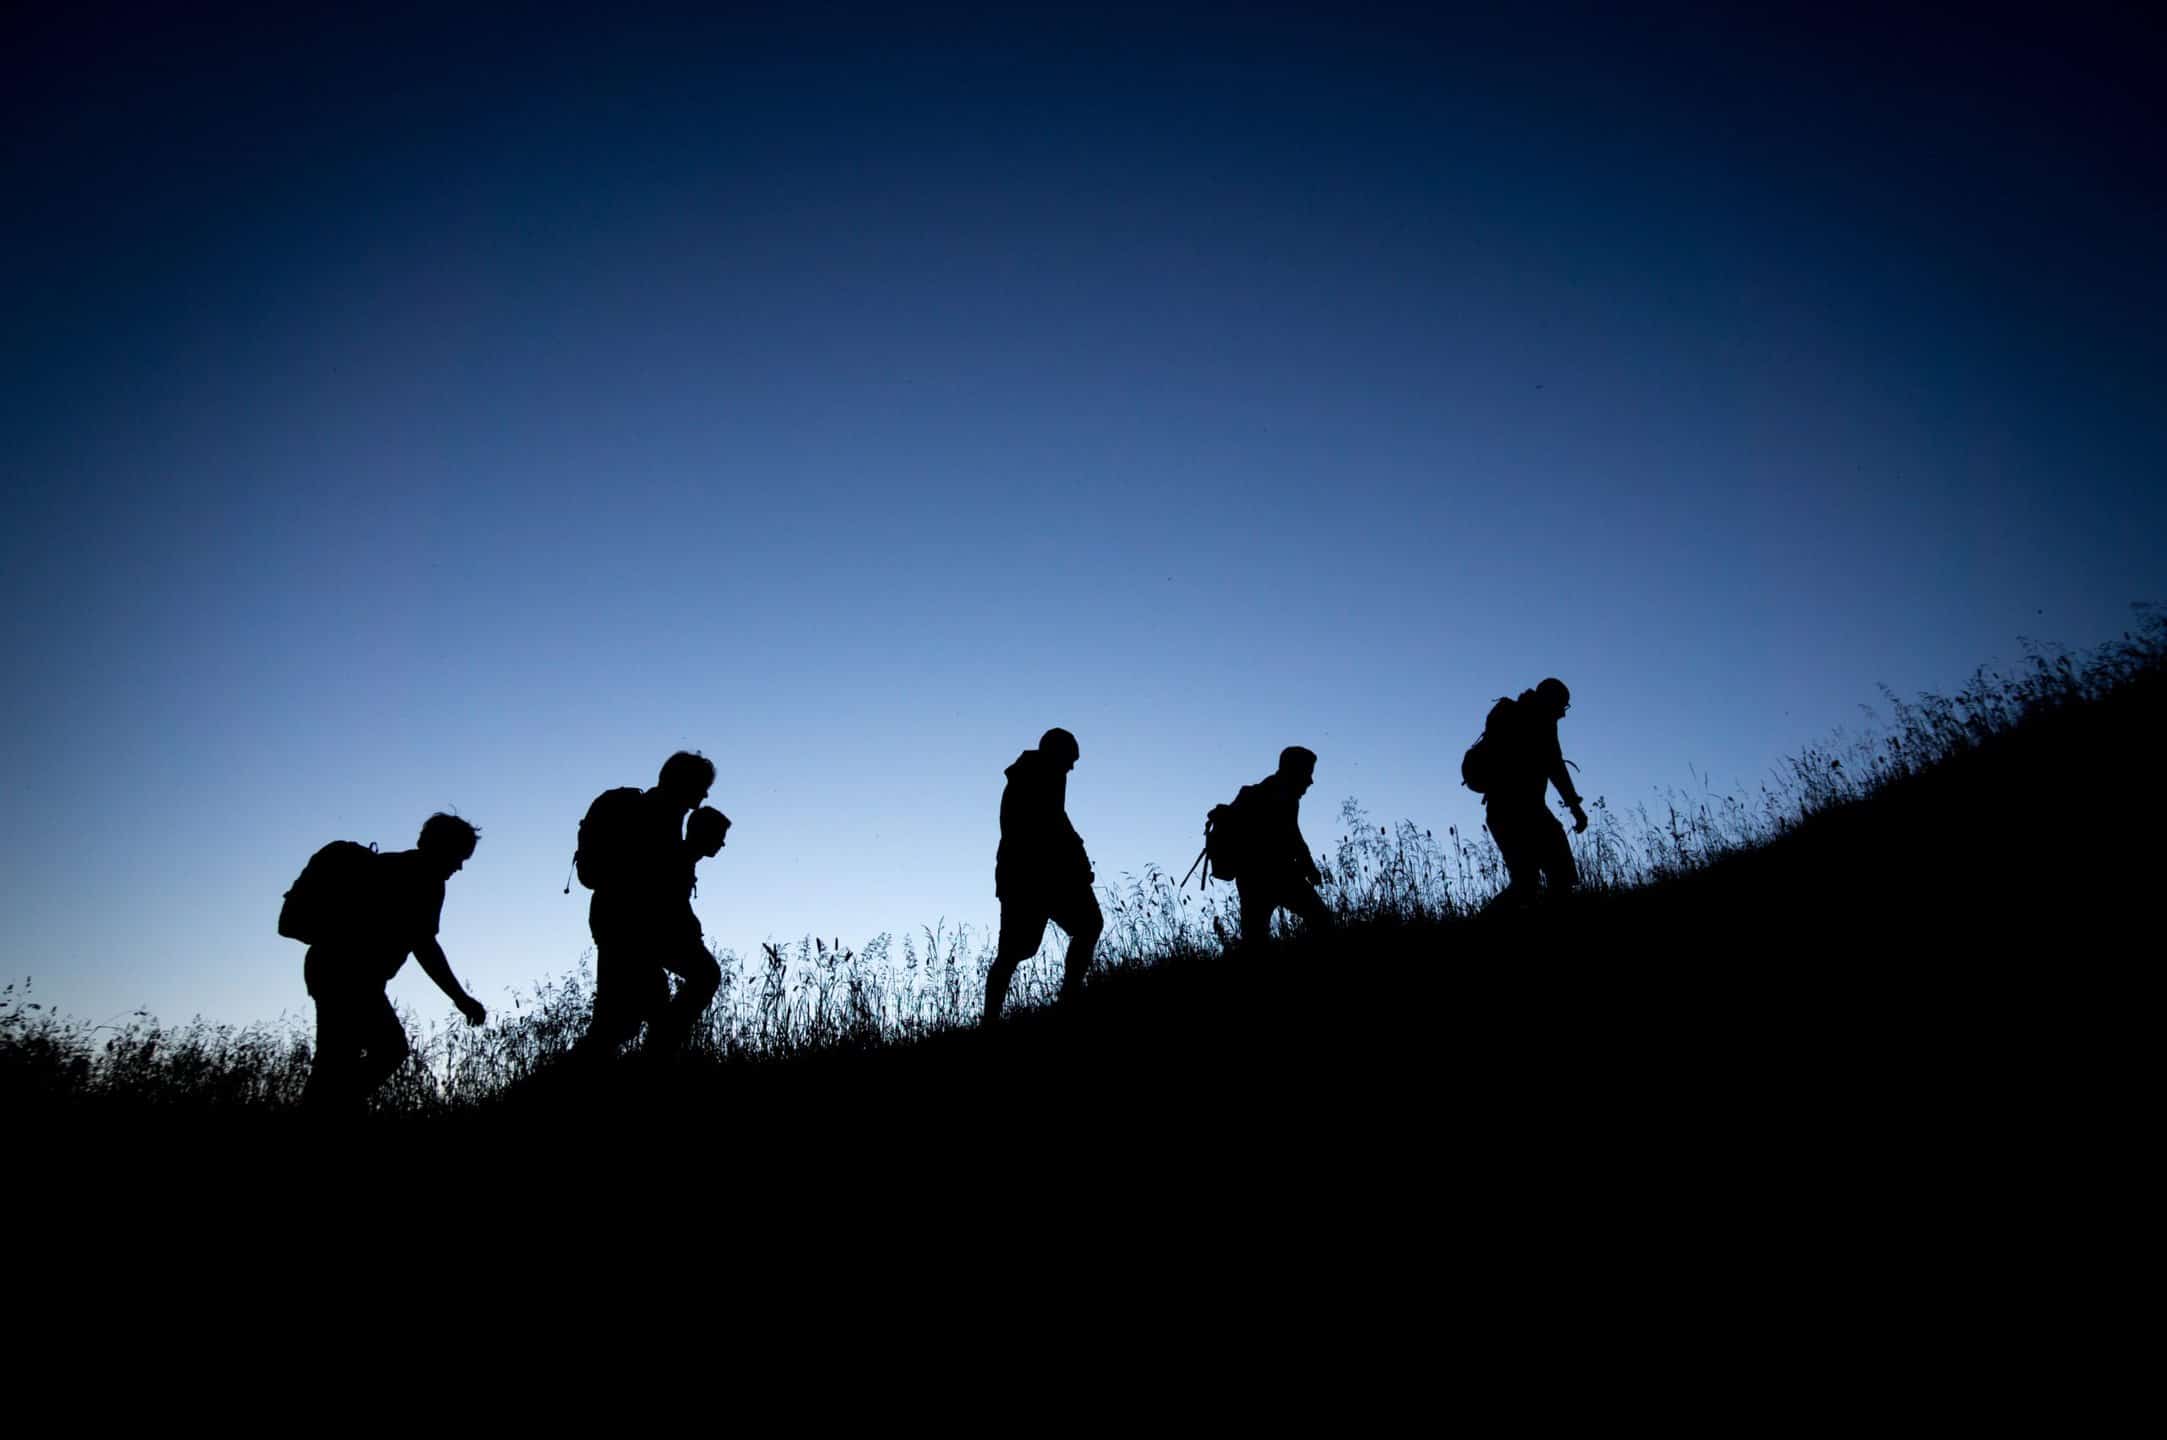 5 randonneurs marchant de nuit. On aperçoit juste leurs silhouettes dans la pénombre.